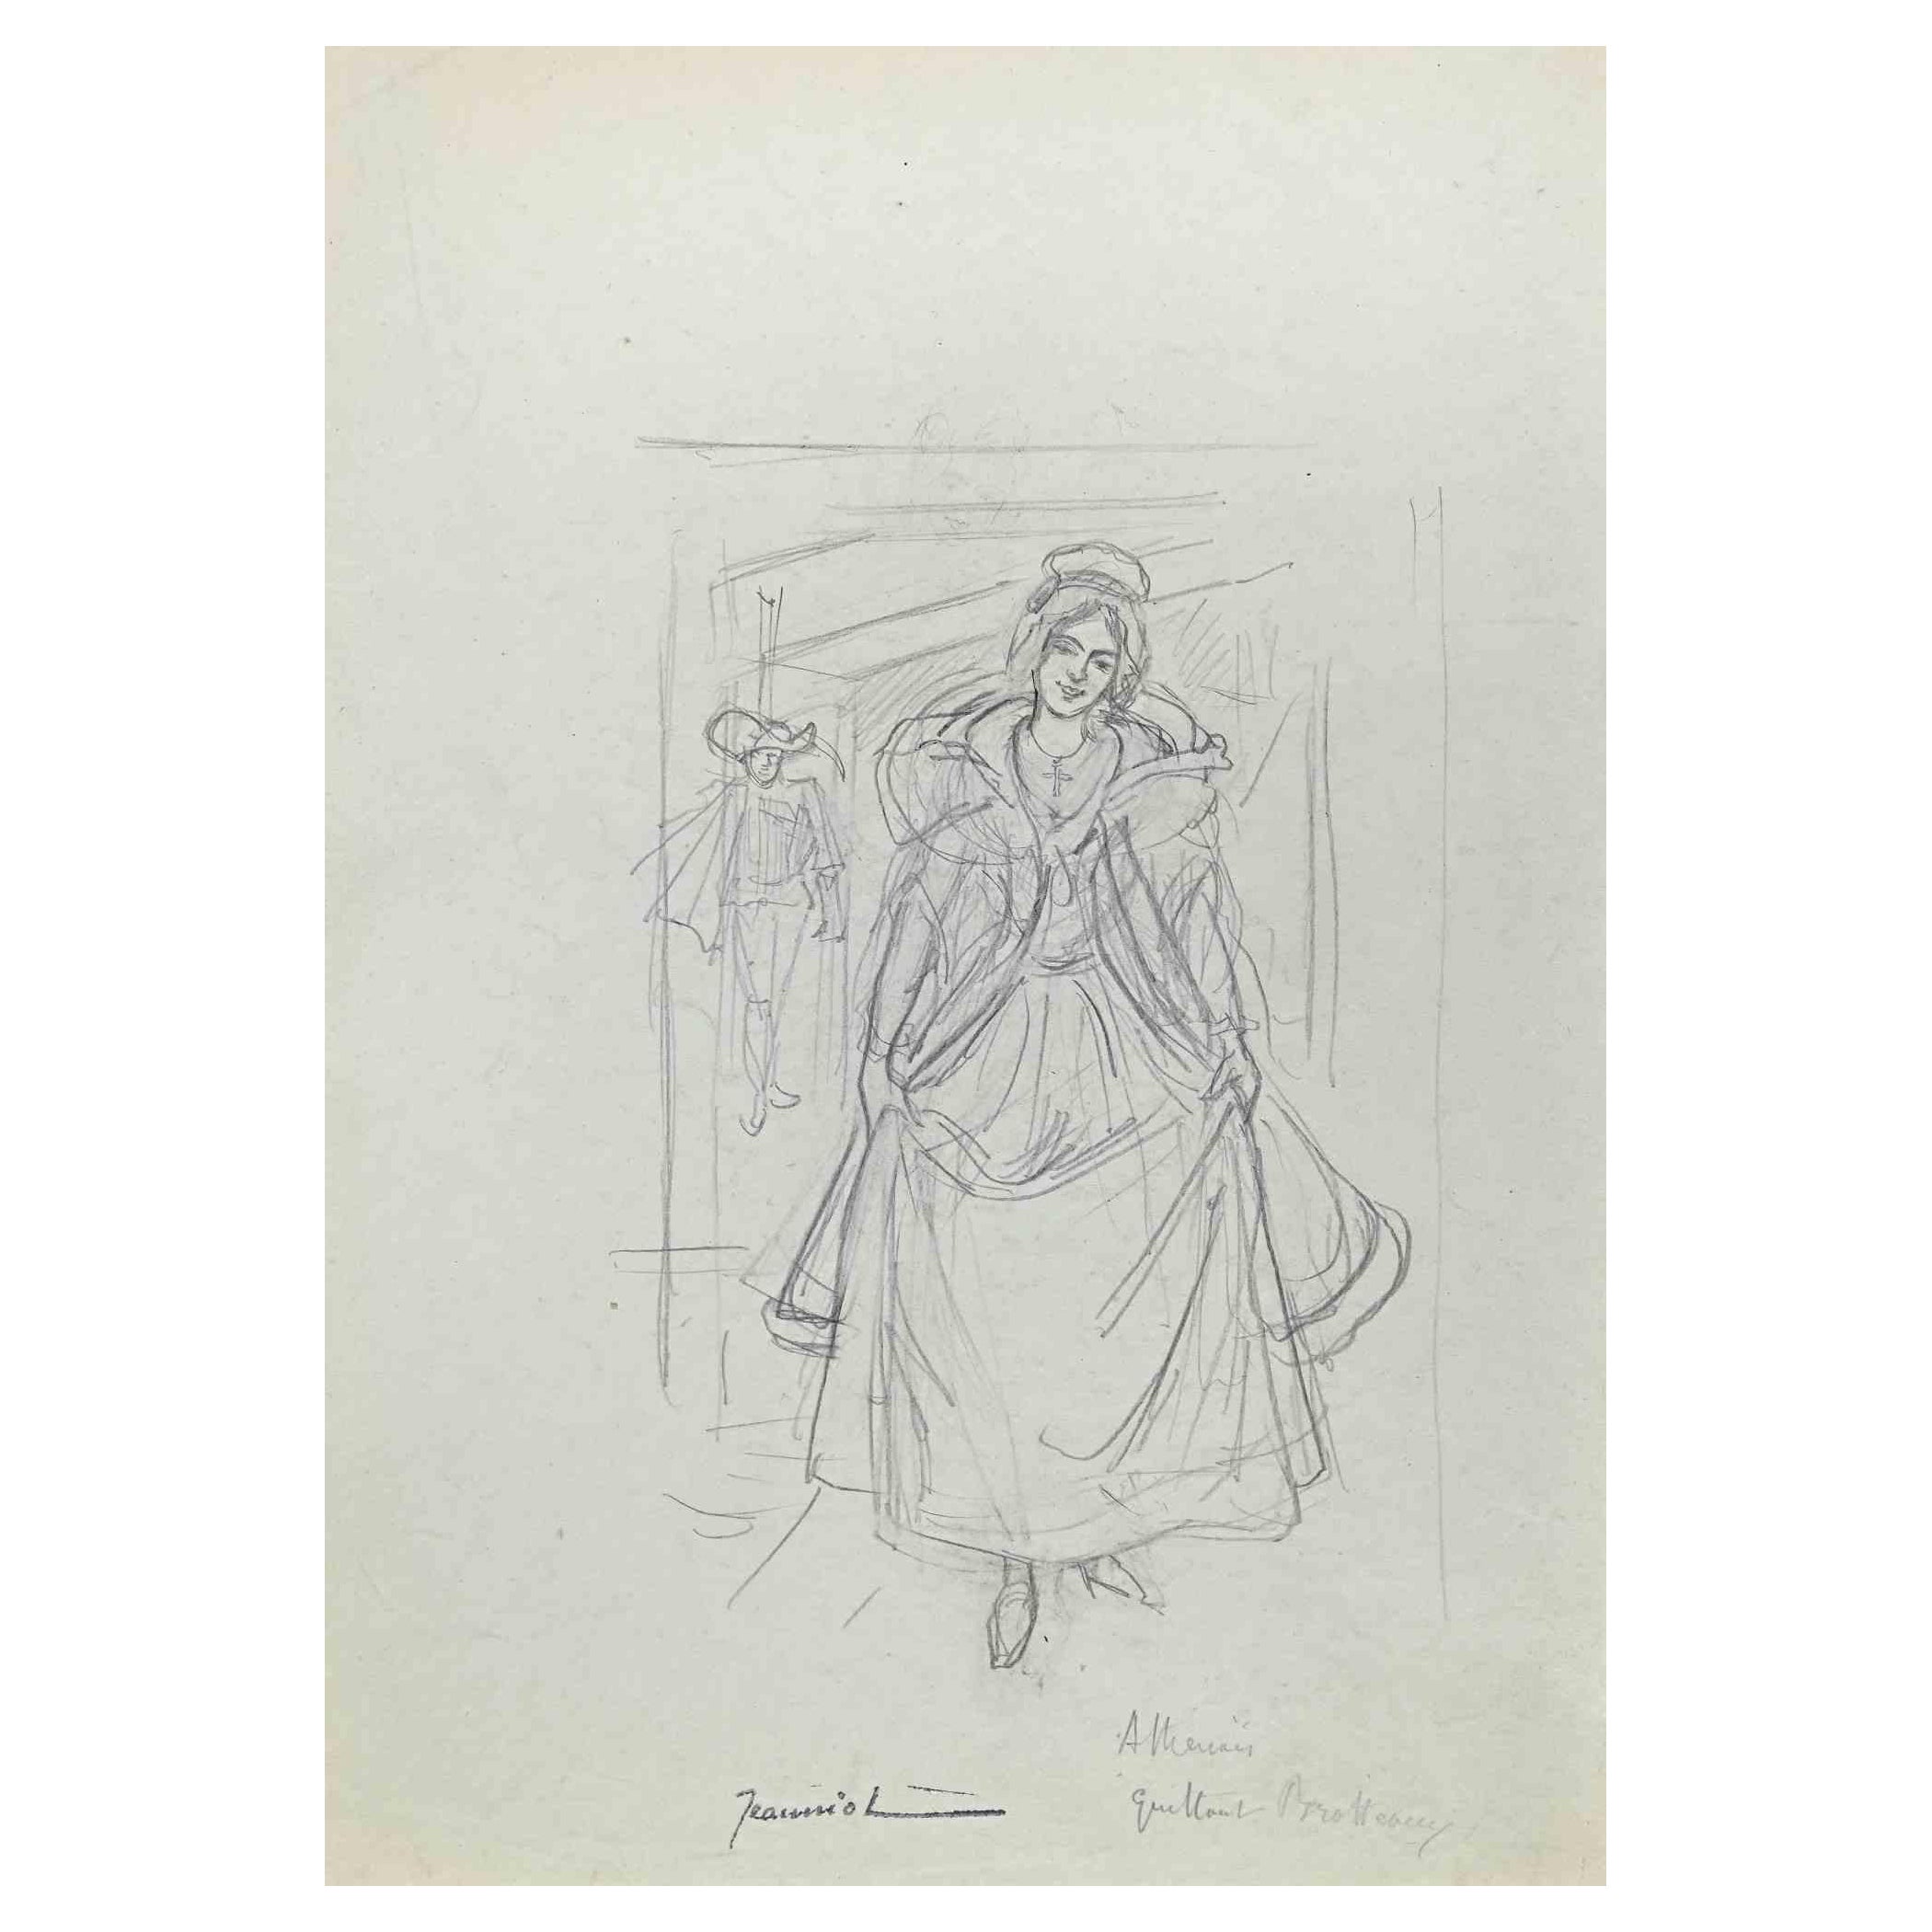 Elegant Lady ist eine Original-Zeichnung auf Papier des Malers Pierre Georges Jeanniot (1848-1934) aus den 1890er Jahren.

Zeichnen mit Bleistift.

Handsigniert auf der Unterseite.

Gute Bedingungen.

Pierre-Georges Jeanniot (1848-1934) war ein